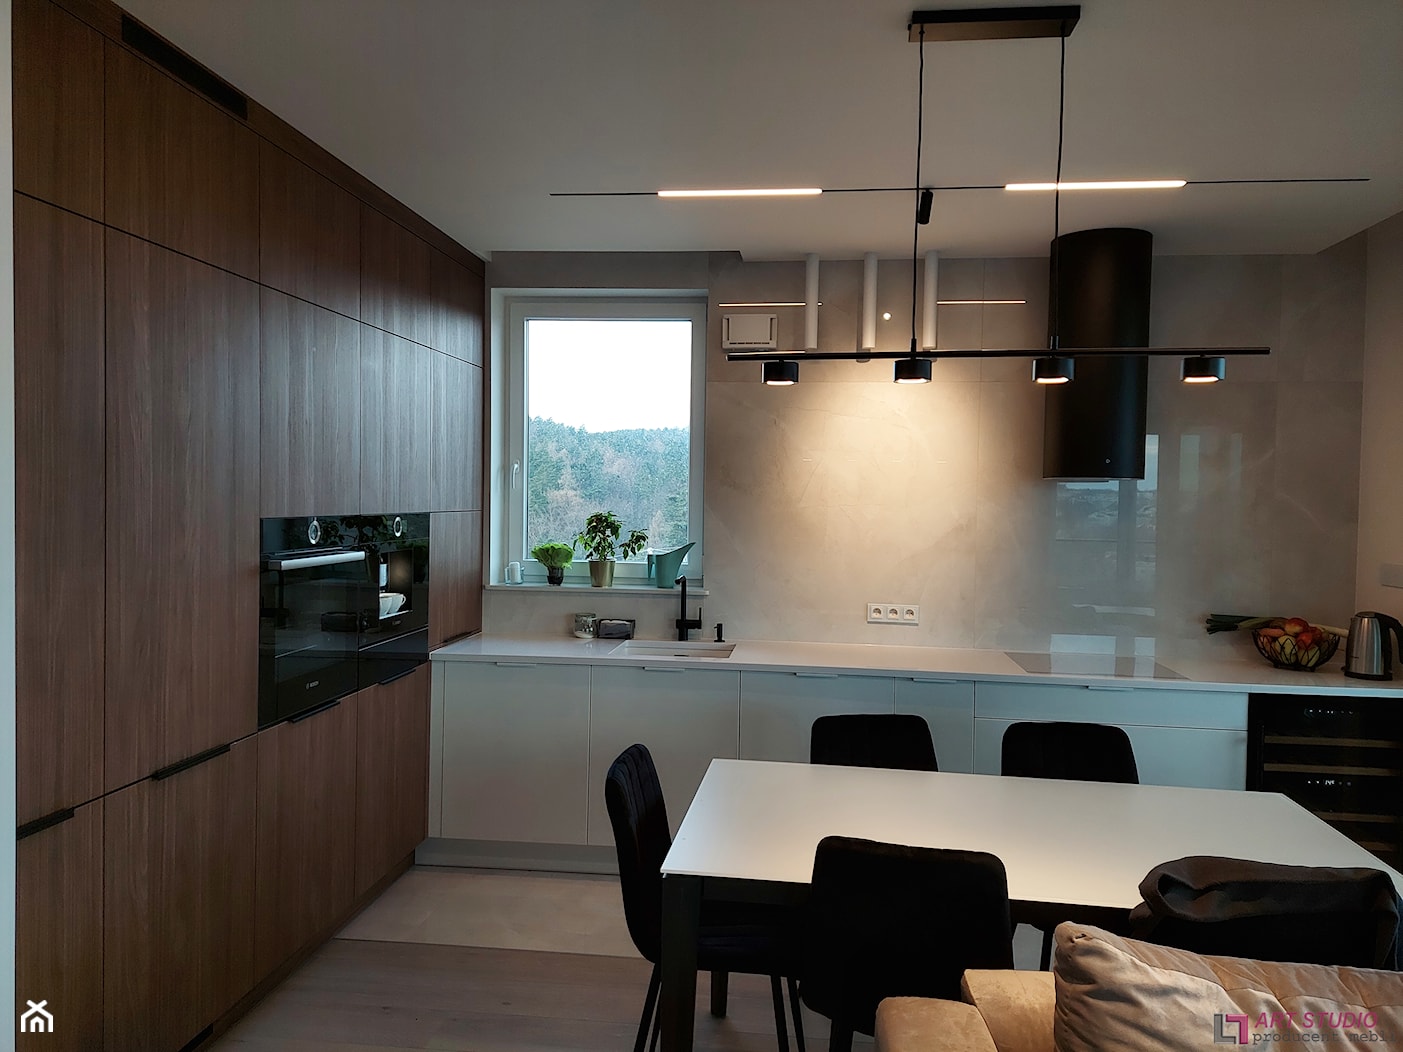 Kompleksowa realizacja wnętrz #4 - Kuchnia, styl minimalistyczny - zdjęcie od Art.studio - Homebook